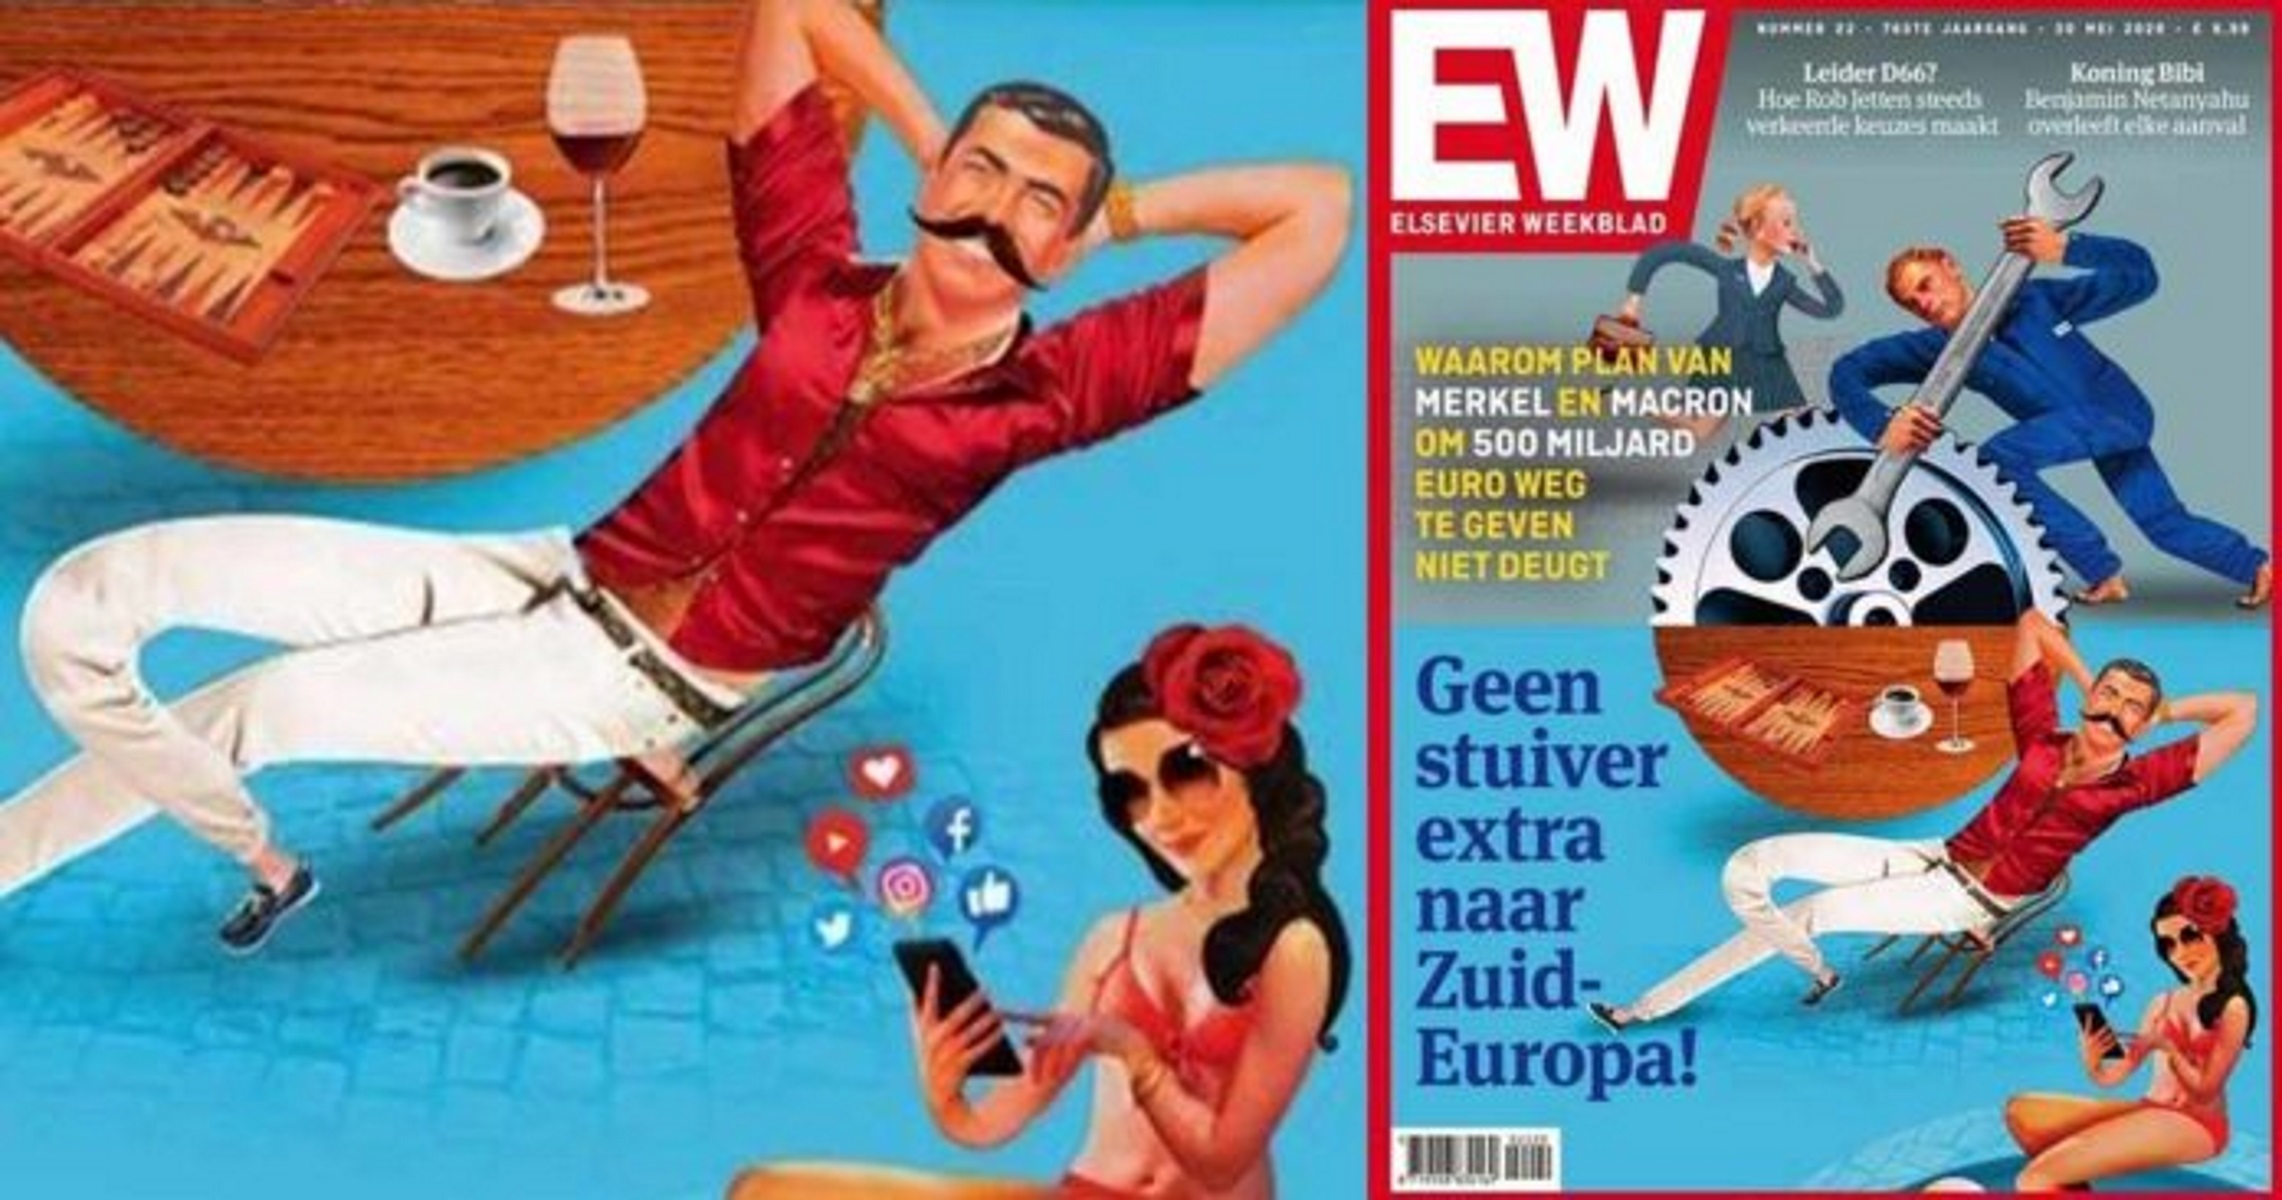 Ολλανδικό περιοδικό αποκαλεί “τεμπέληδες” τους Έλληνες